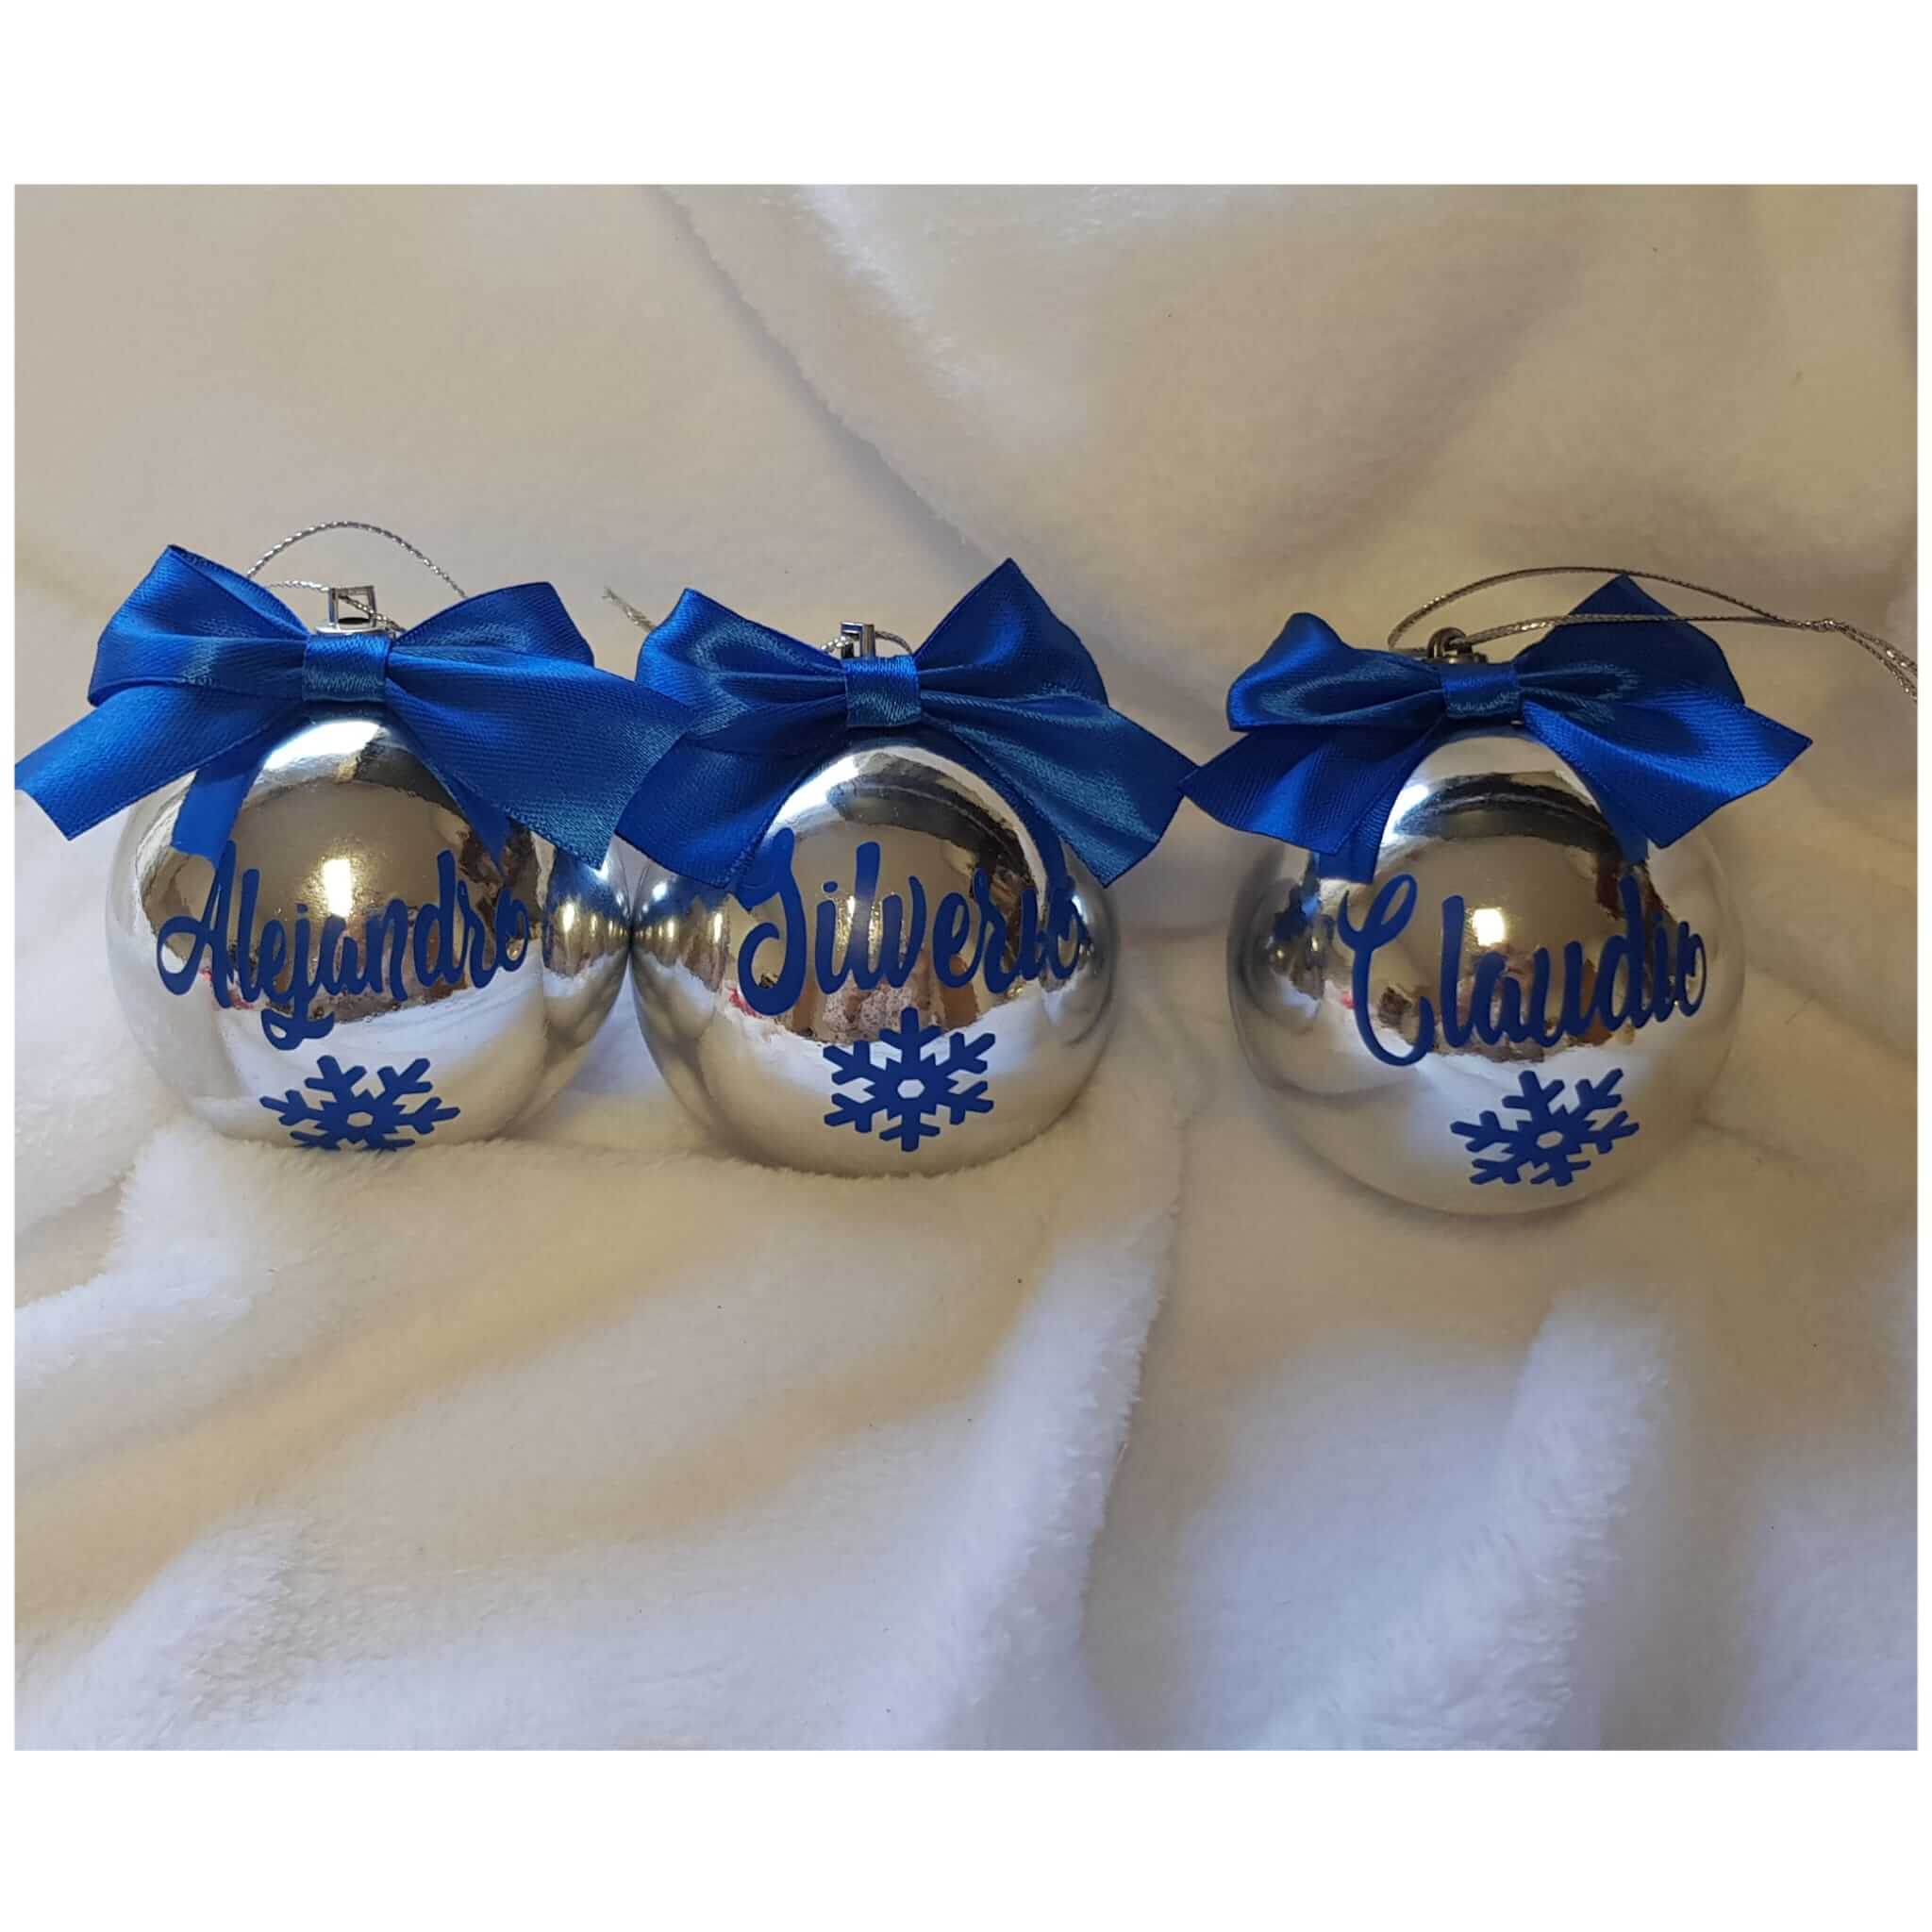 bolas de navidad personalizadas bolas navideñas bola de navidad bolas navidad personalizadas 